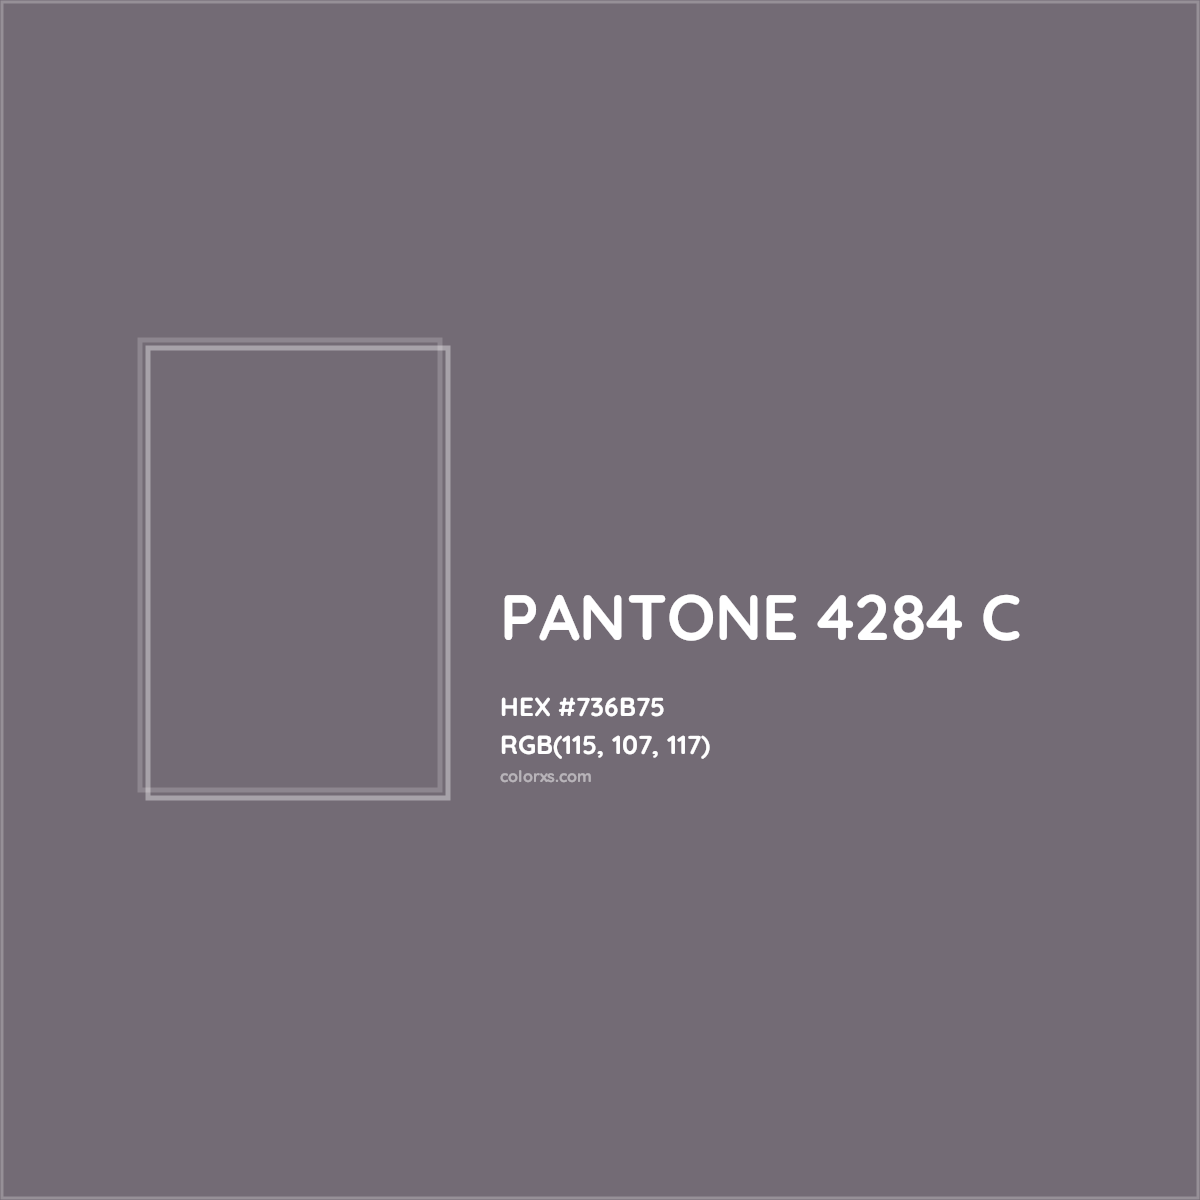 HEX #736B75 PANTONE 4284 C CMS Pantone PMS - Color Code